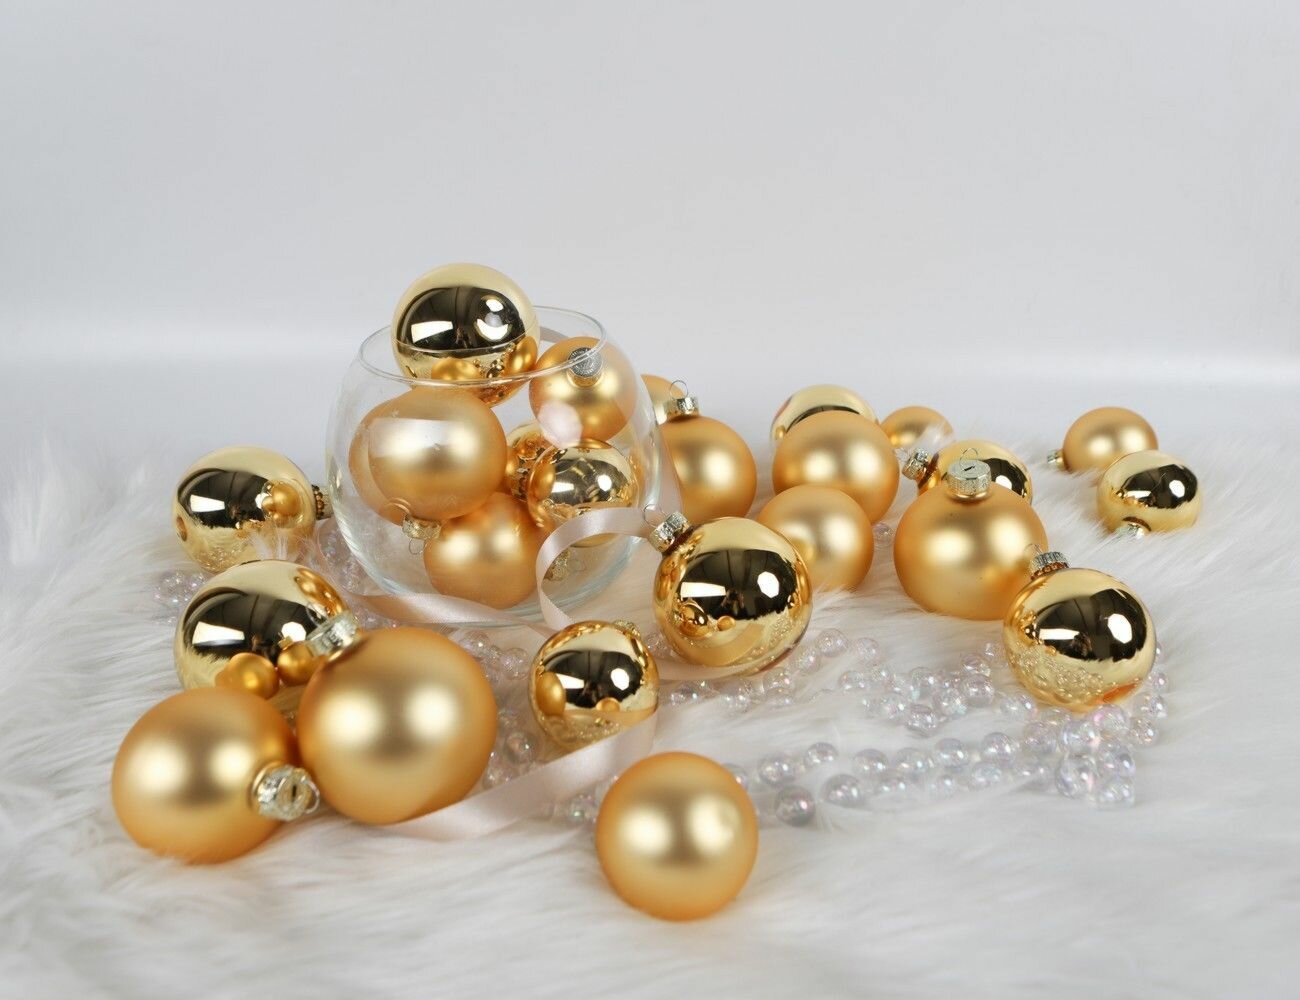 Набор стеклянных шаров магия оттенка - золото рождества, золотые, глянцевые и матовые, 5-7 см, 26 шт, Triumph Tree 1028673/86451